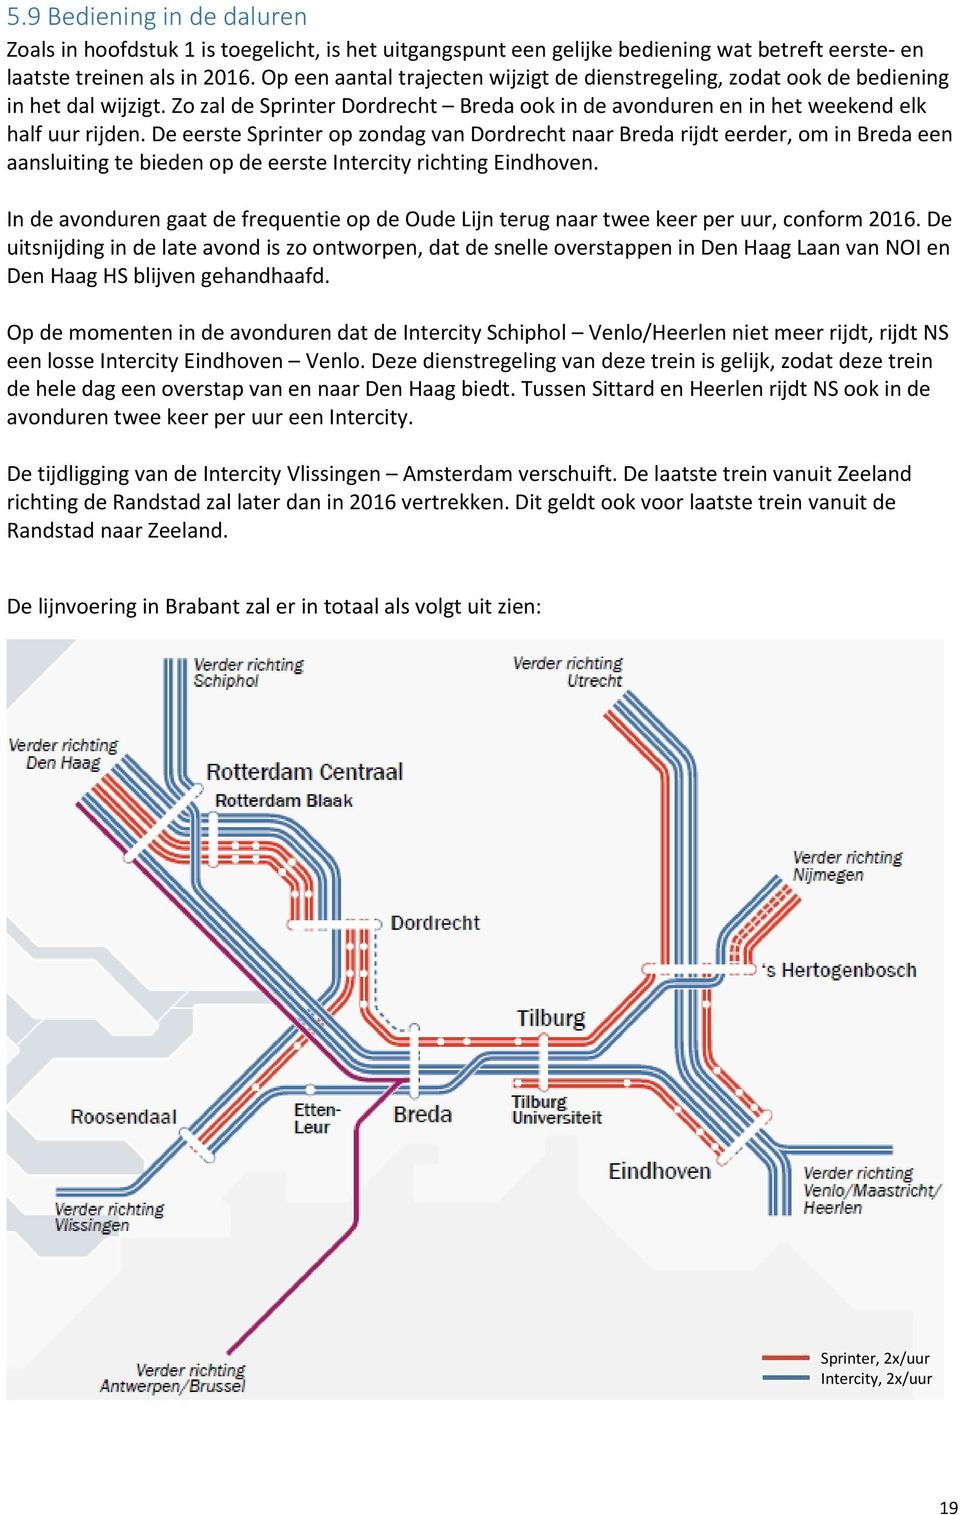 De eerste Sprinter op zondag van Dordrecht naar Breda rijdt eerder, om in Breda een aansluiting te bieden op de eerste Intercity richting Eindhoven.